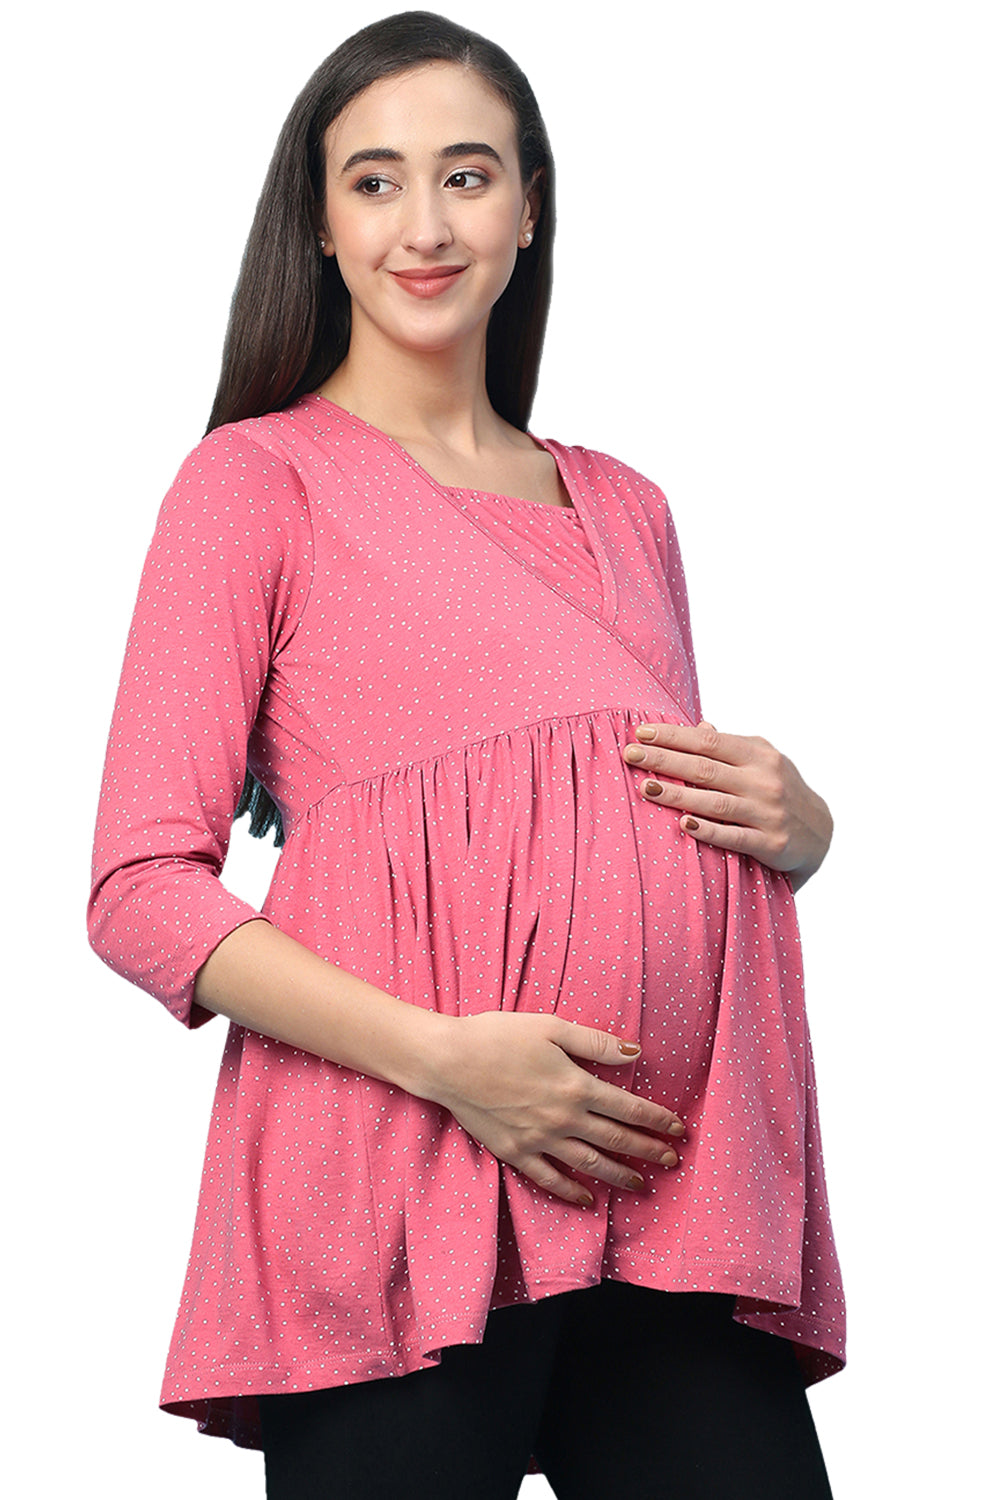 Organic Healthy Full Sleeves Maternity Top_ISML007-Desert Rose